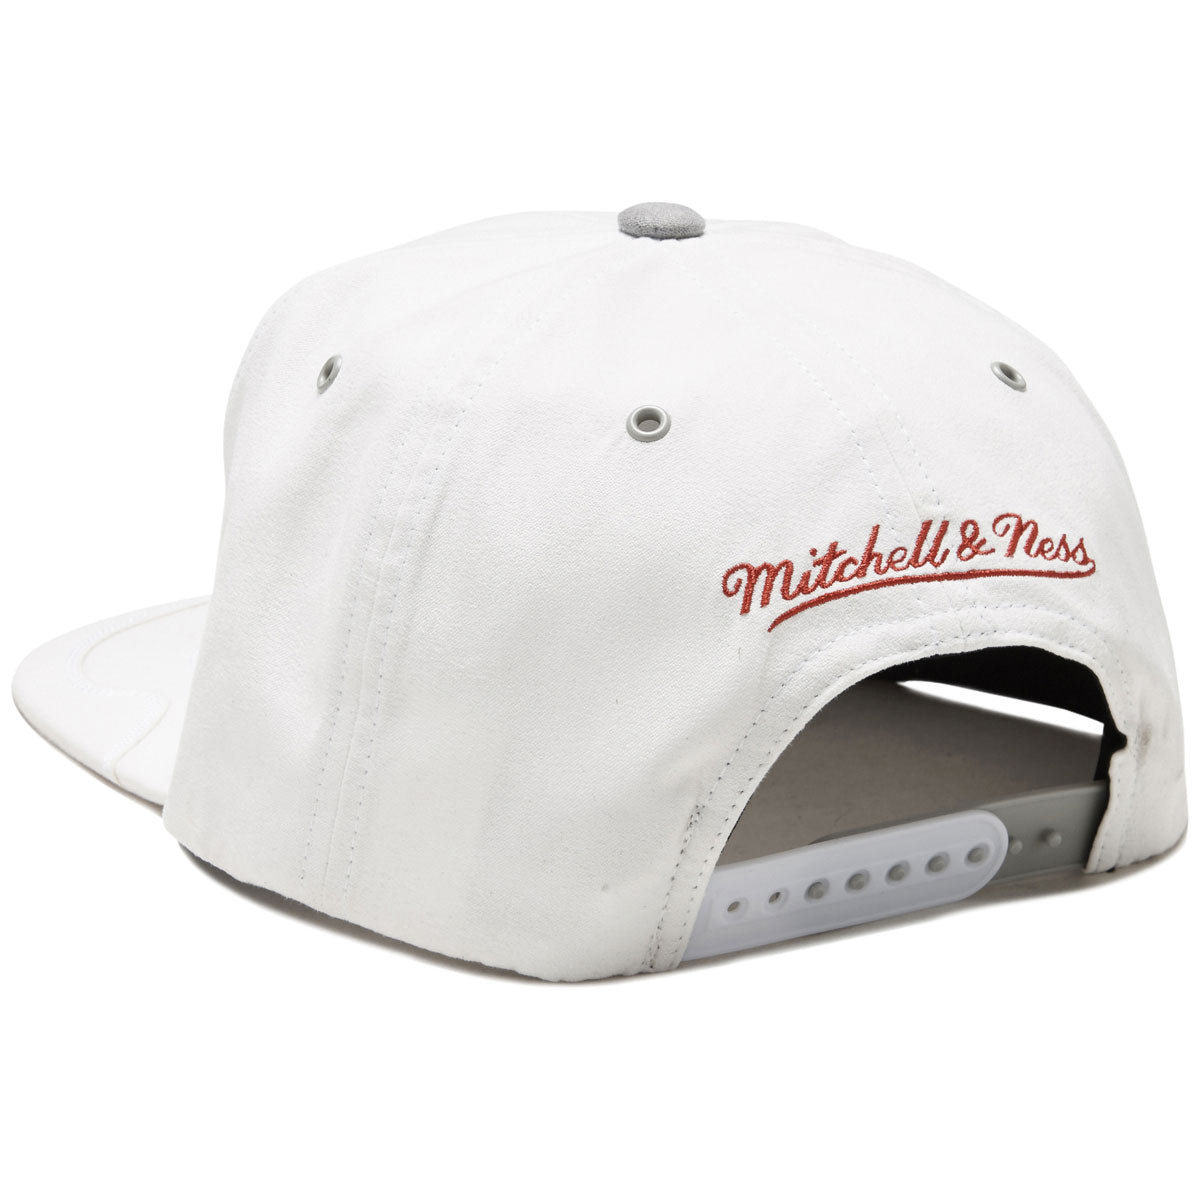 Mitchell & Ness x NBA Day 4 Snapback Bulls Hat - White image 2